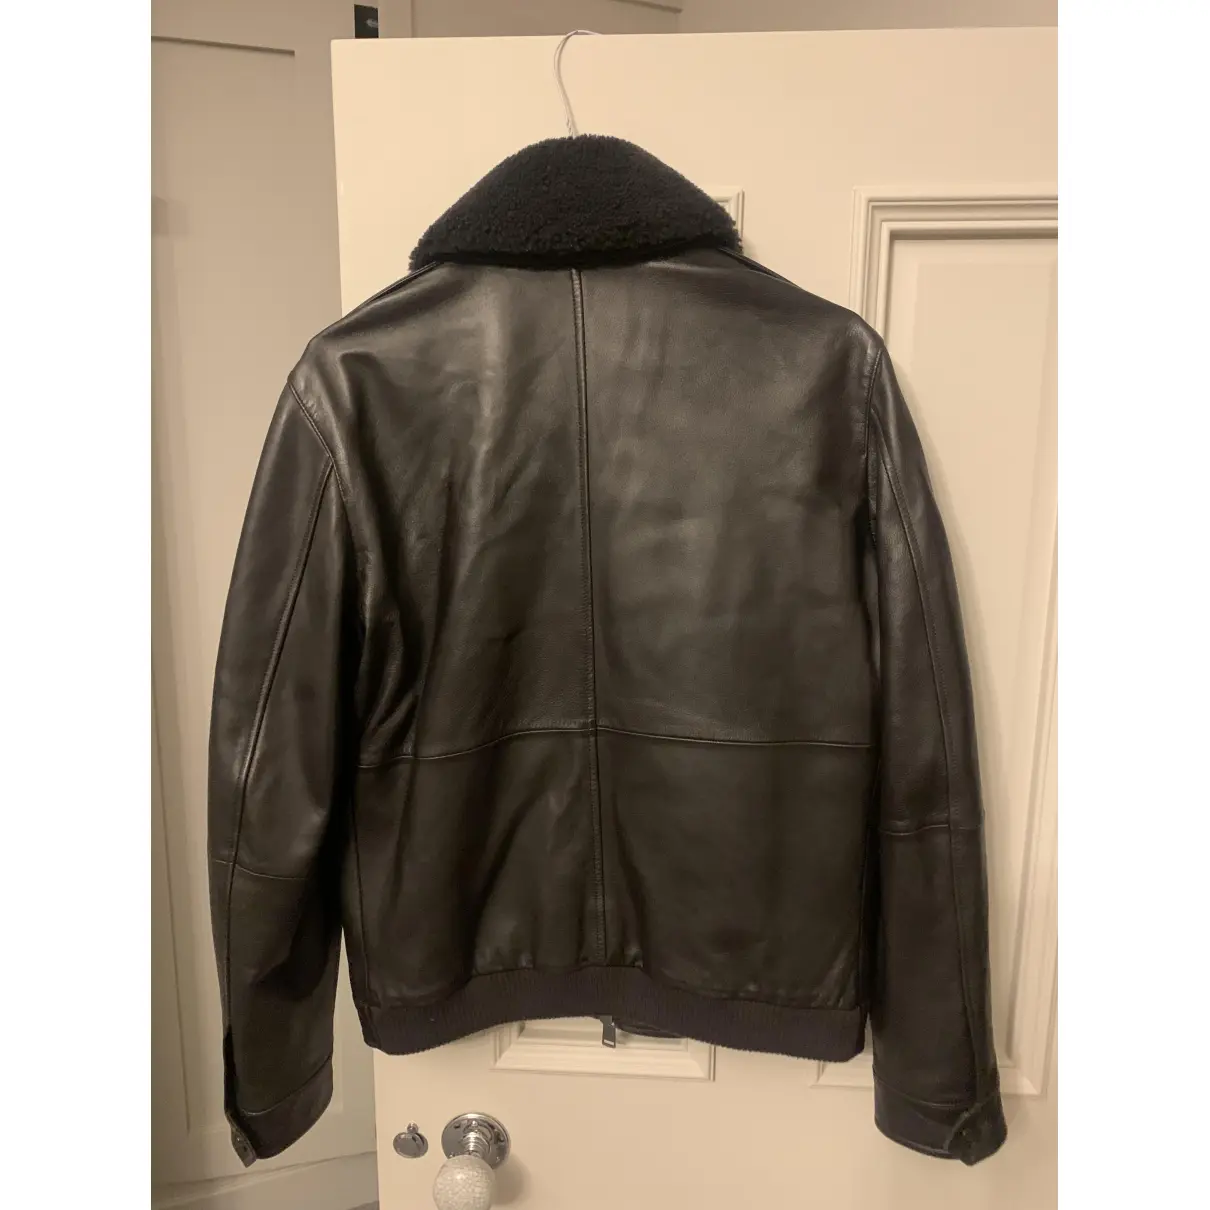 Buy Hugo Boss Leather jacket online